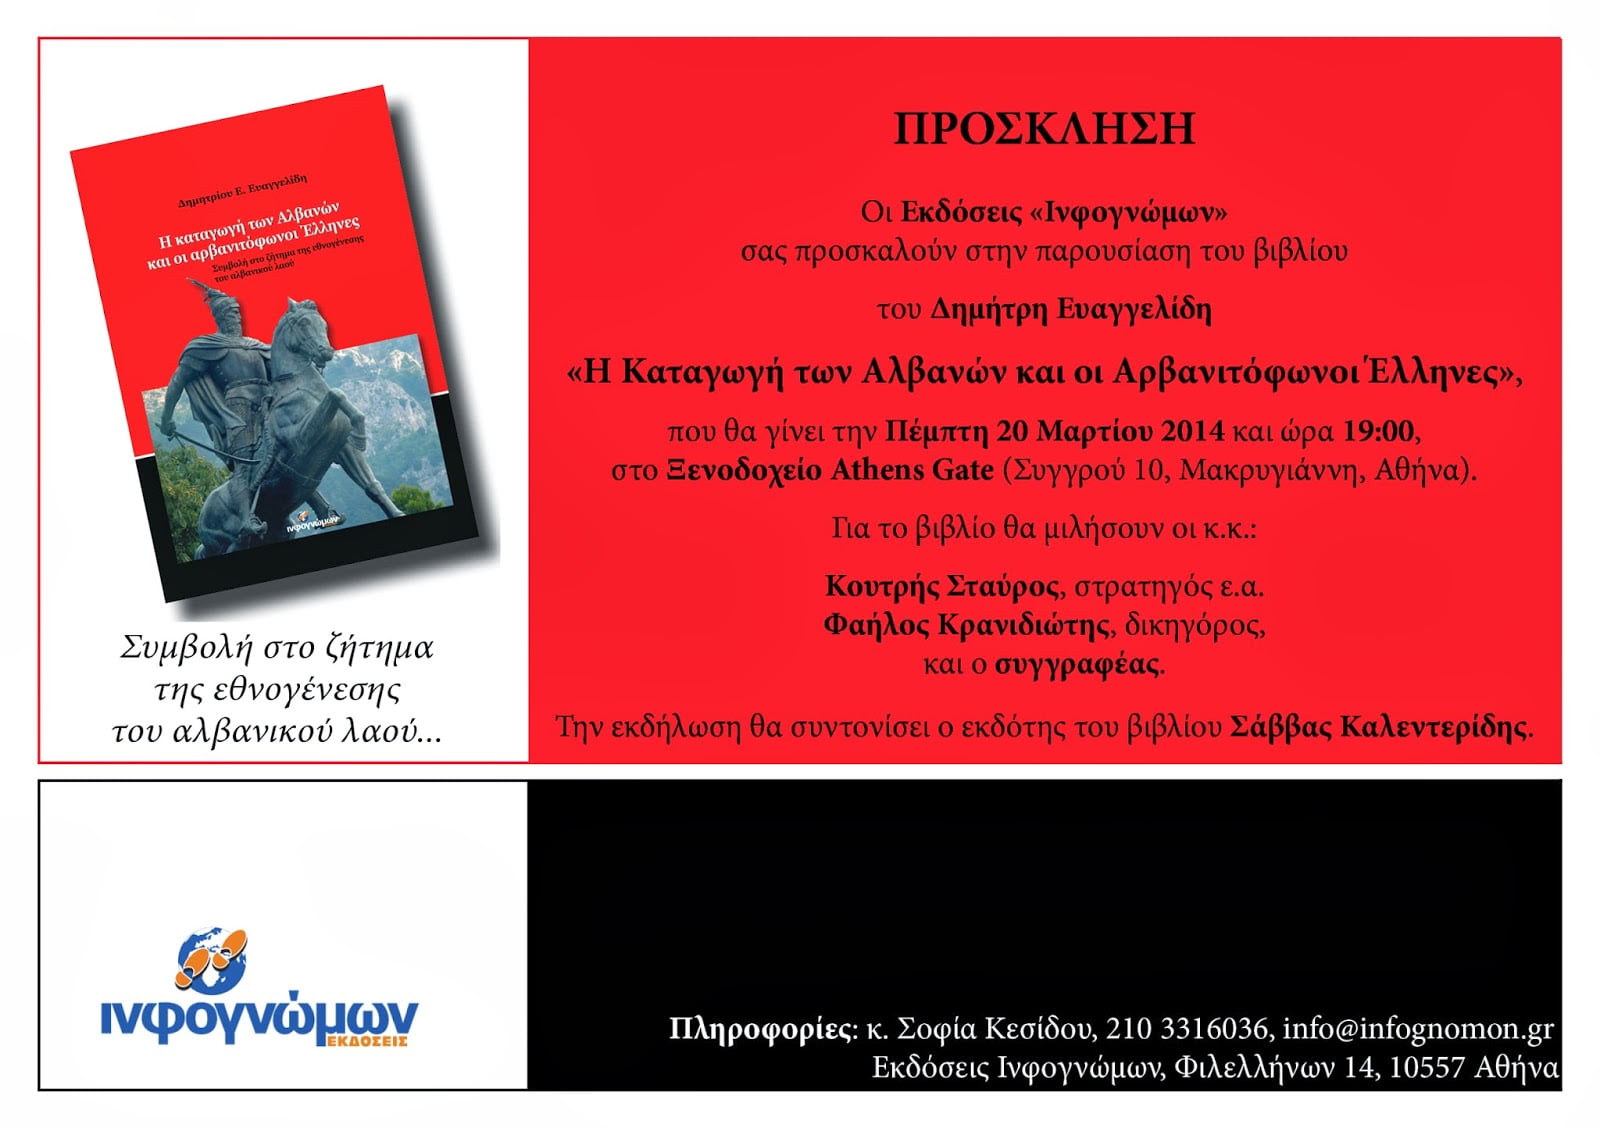 Σήμερα η παρουσίαση του βιβλίου του Δ. Ευαγγελίδη: “Η Καταγωγή των Αλβανών και οι Αρβανιτόφωνοι Έλληνες”